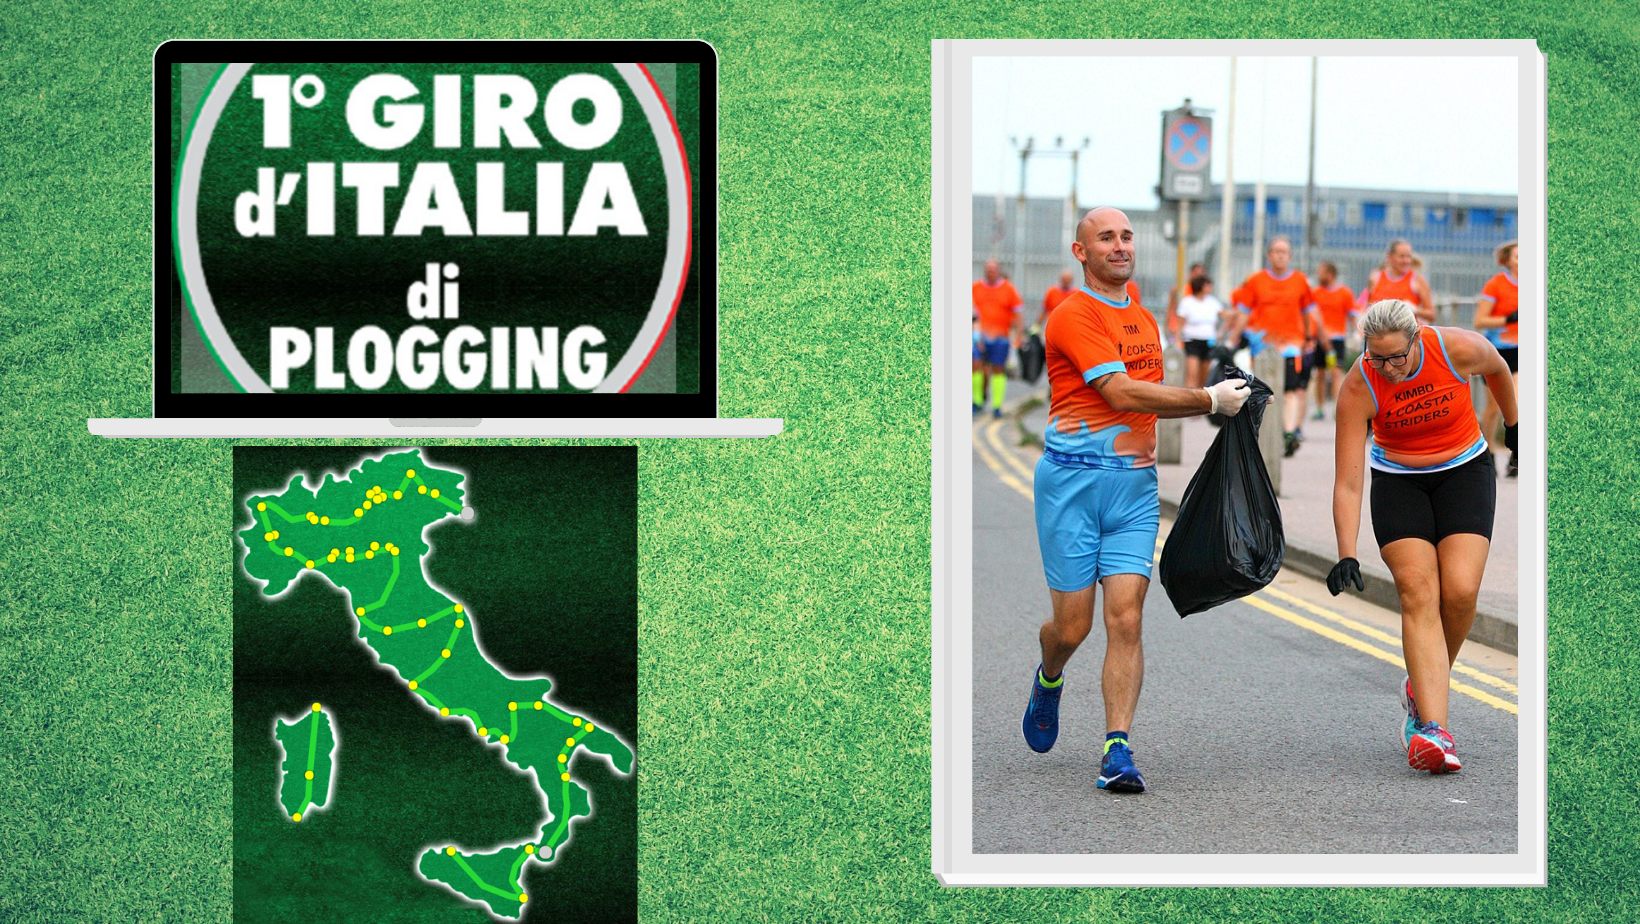 Giro d’Italia di plogging: l’ecosostenibilità diventa uno sport